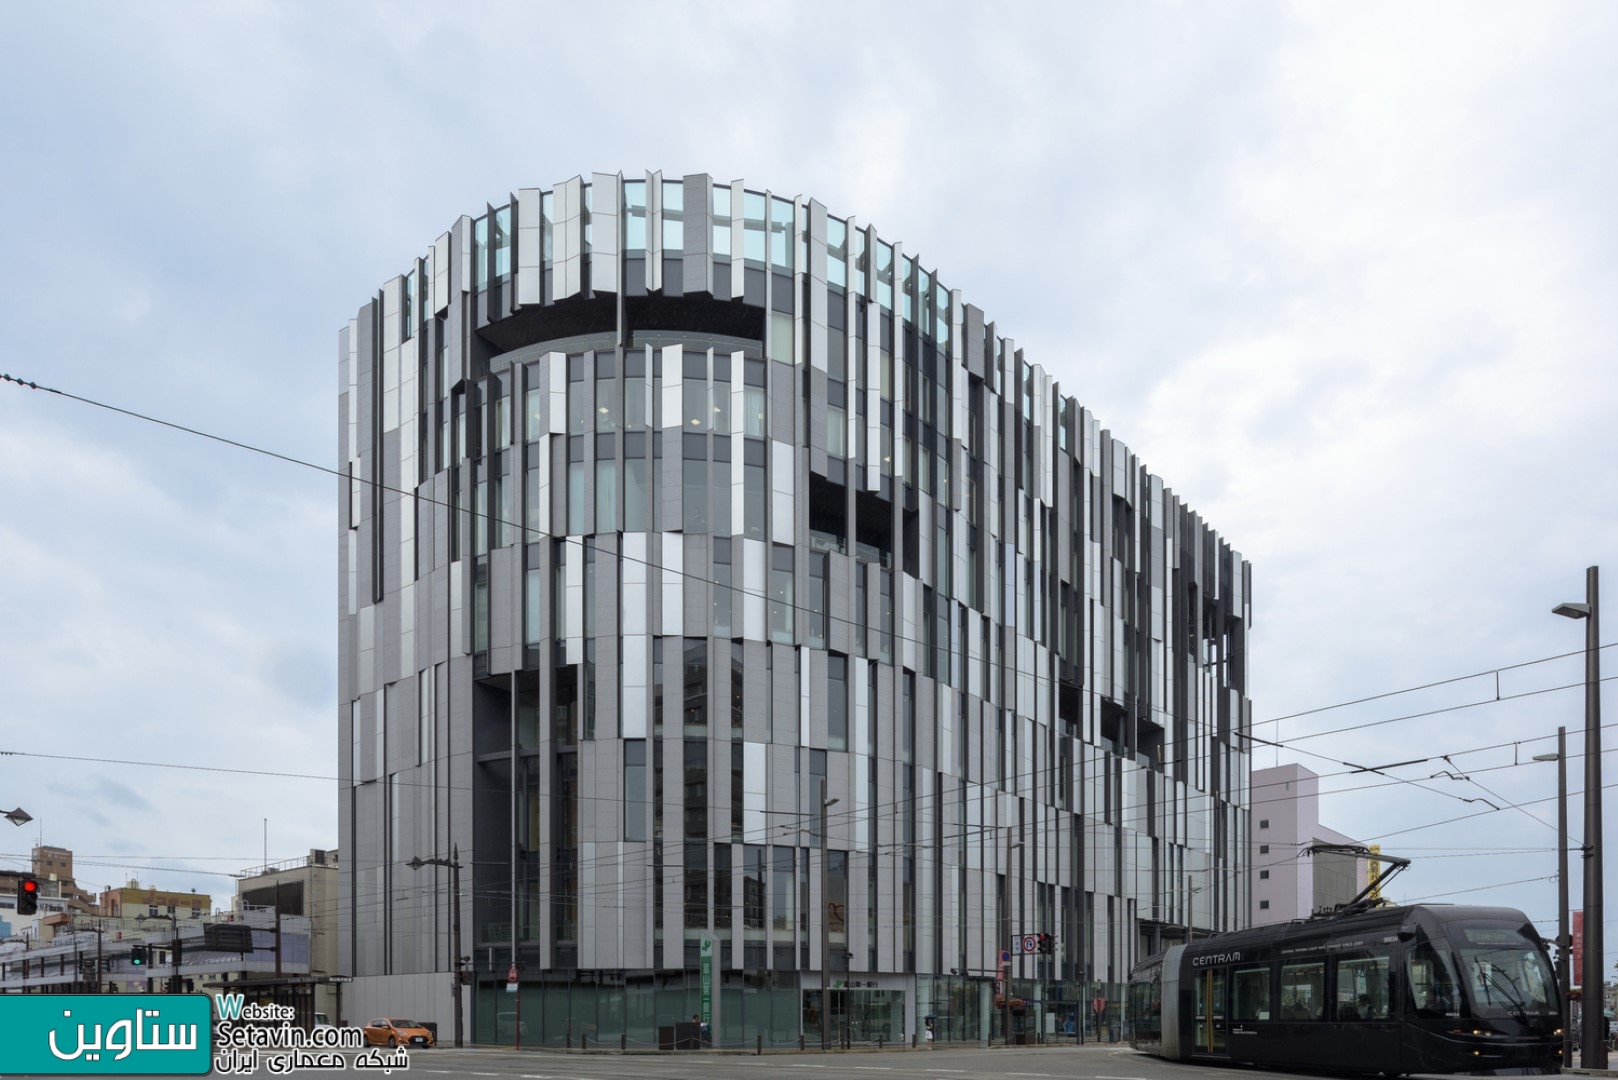 در این پست با ستاوین همراه باشید تا نگاهی به پروژه کتابخانه Toyama Kirari , در قلب شهر تویاما , ژاپن , داشته باشیم ... این ساختمان ترکیبی است از موزه هنر آبگینه ، کتابخانه شهر ویک بانک محلی. یک فضای باز به صورت یک وید بزرگ  در مرکز ساختمان باعث توزیع موثر نور از سمت جنوب شده که به اتصال سه فعالیت اصلی (کاربری) می کند.